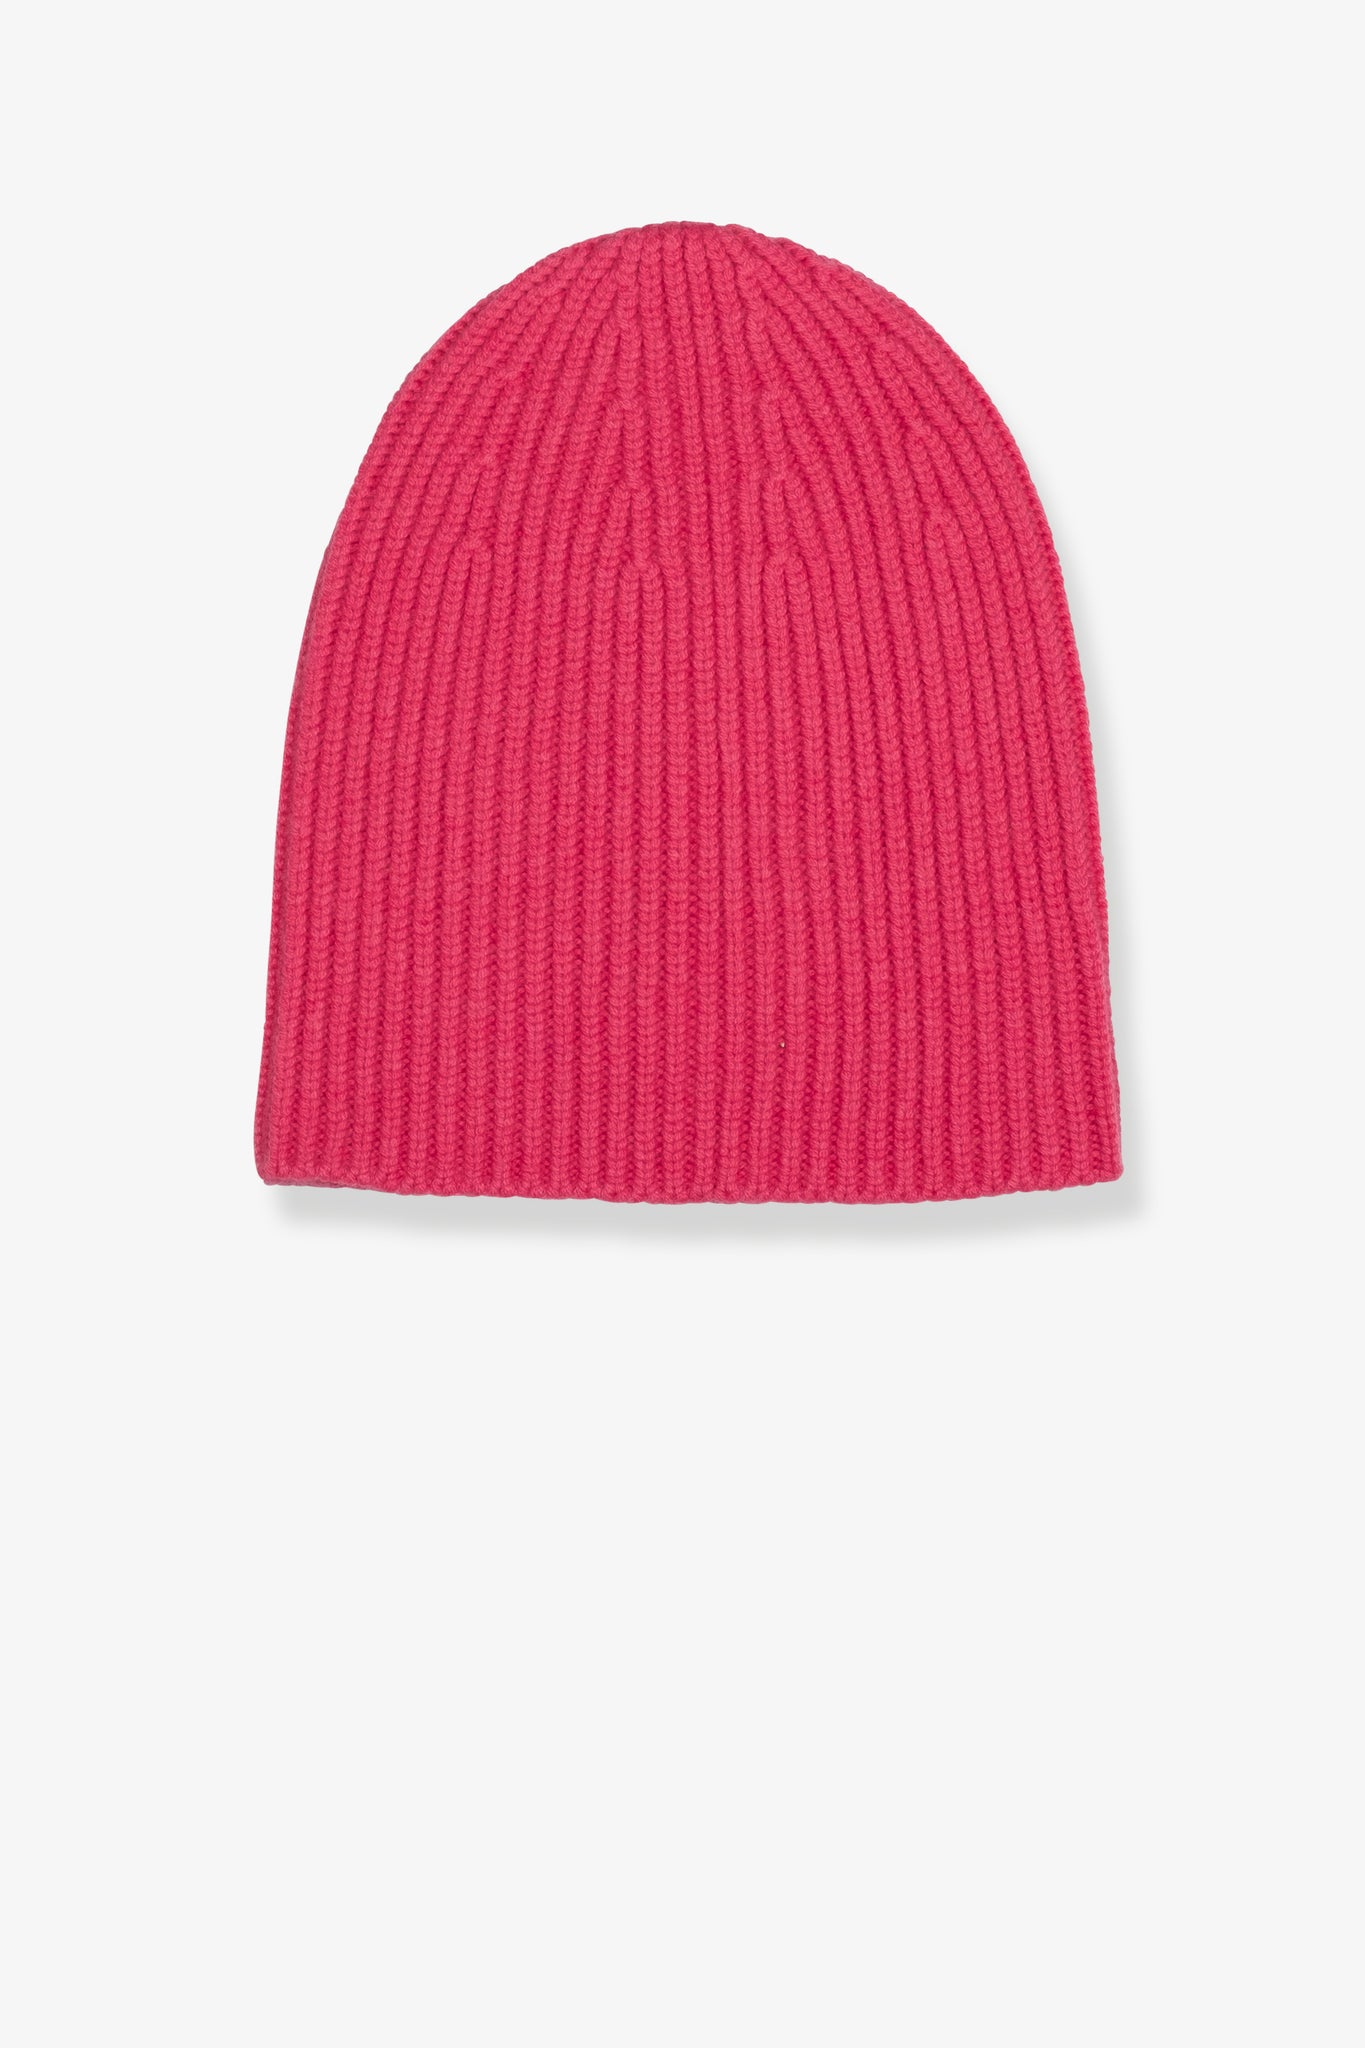 Qara Cap pink